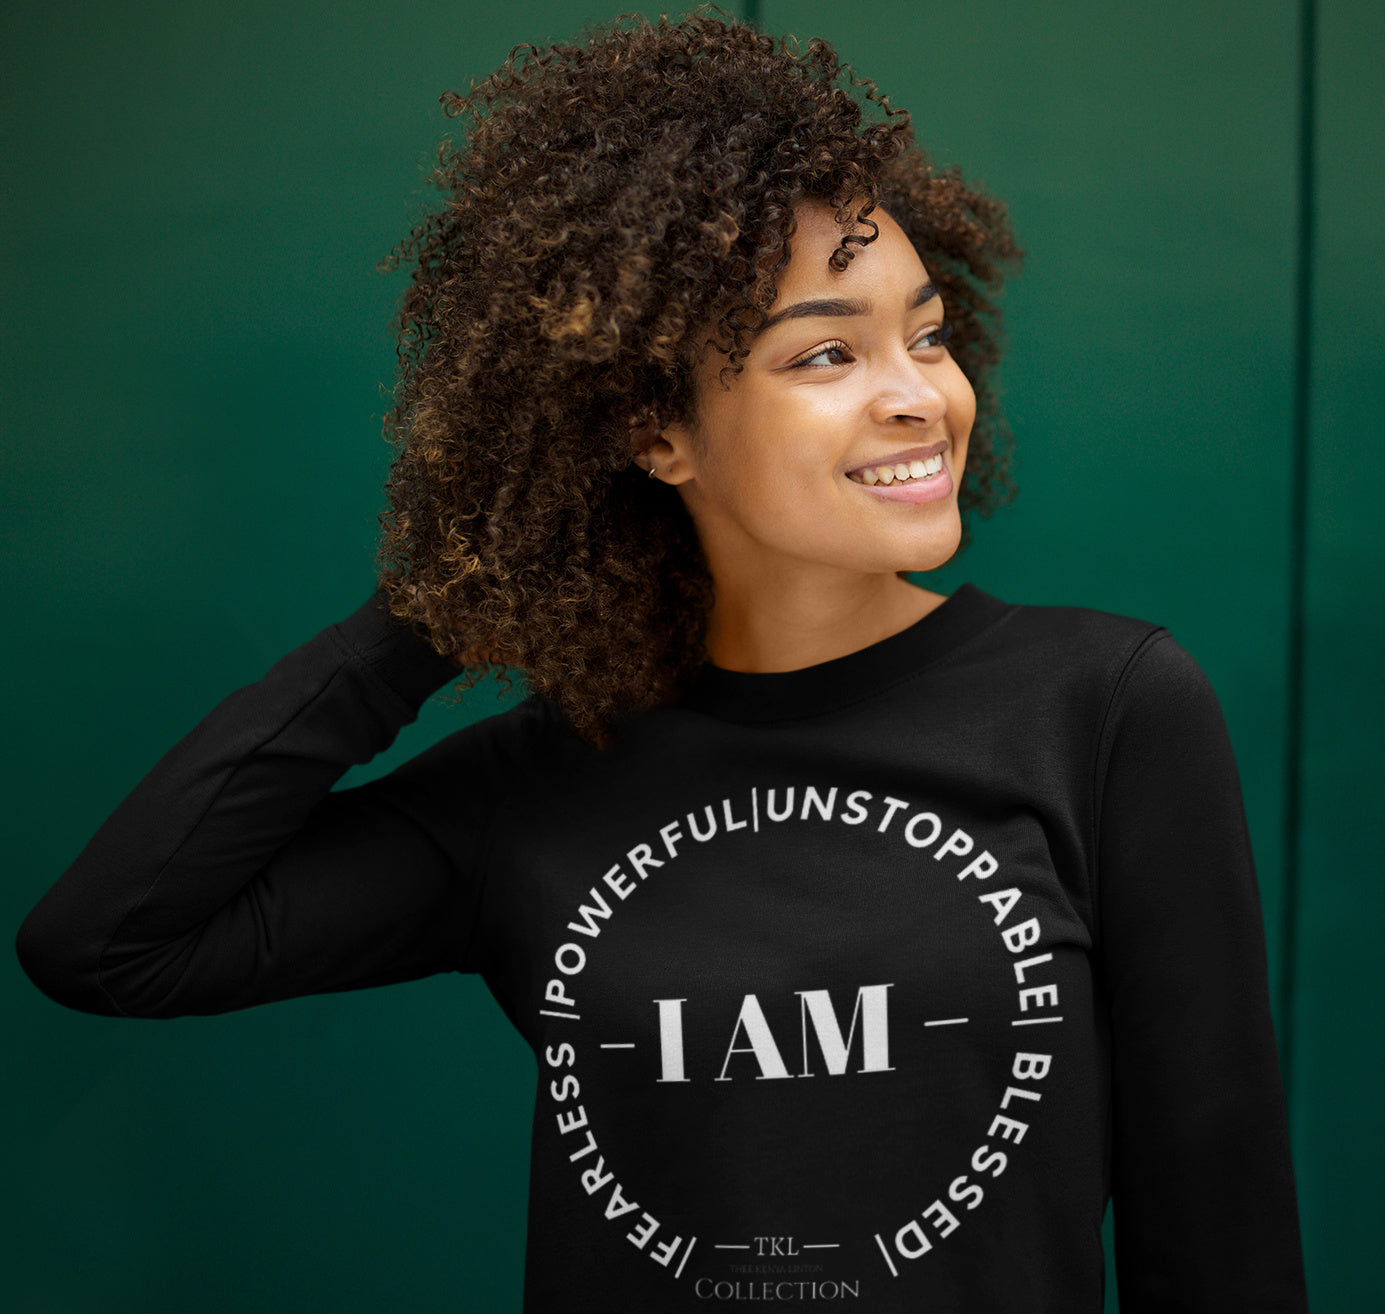 "I AM" Limited-Edition Sweatshirt (S-5XL)